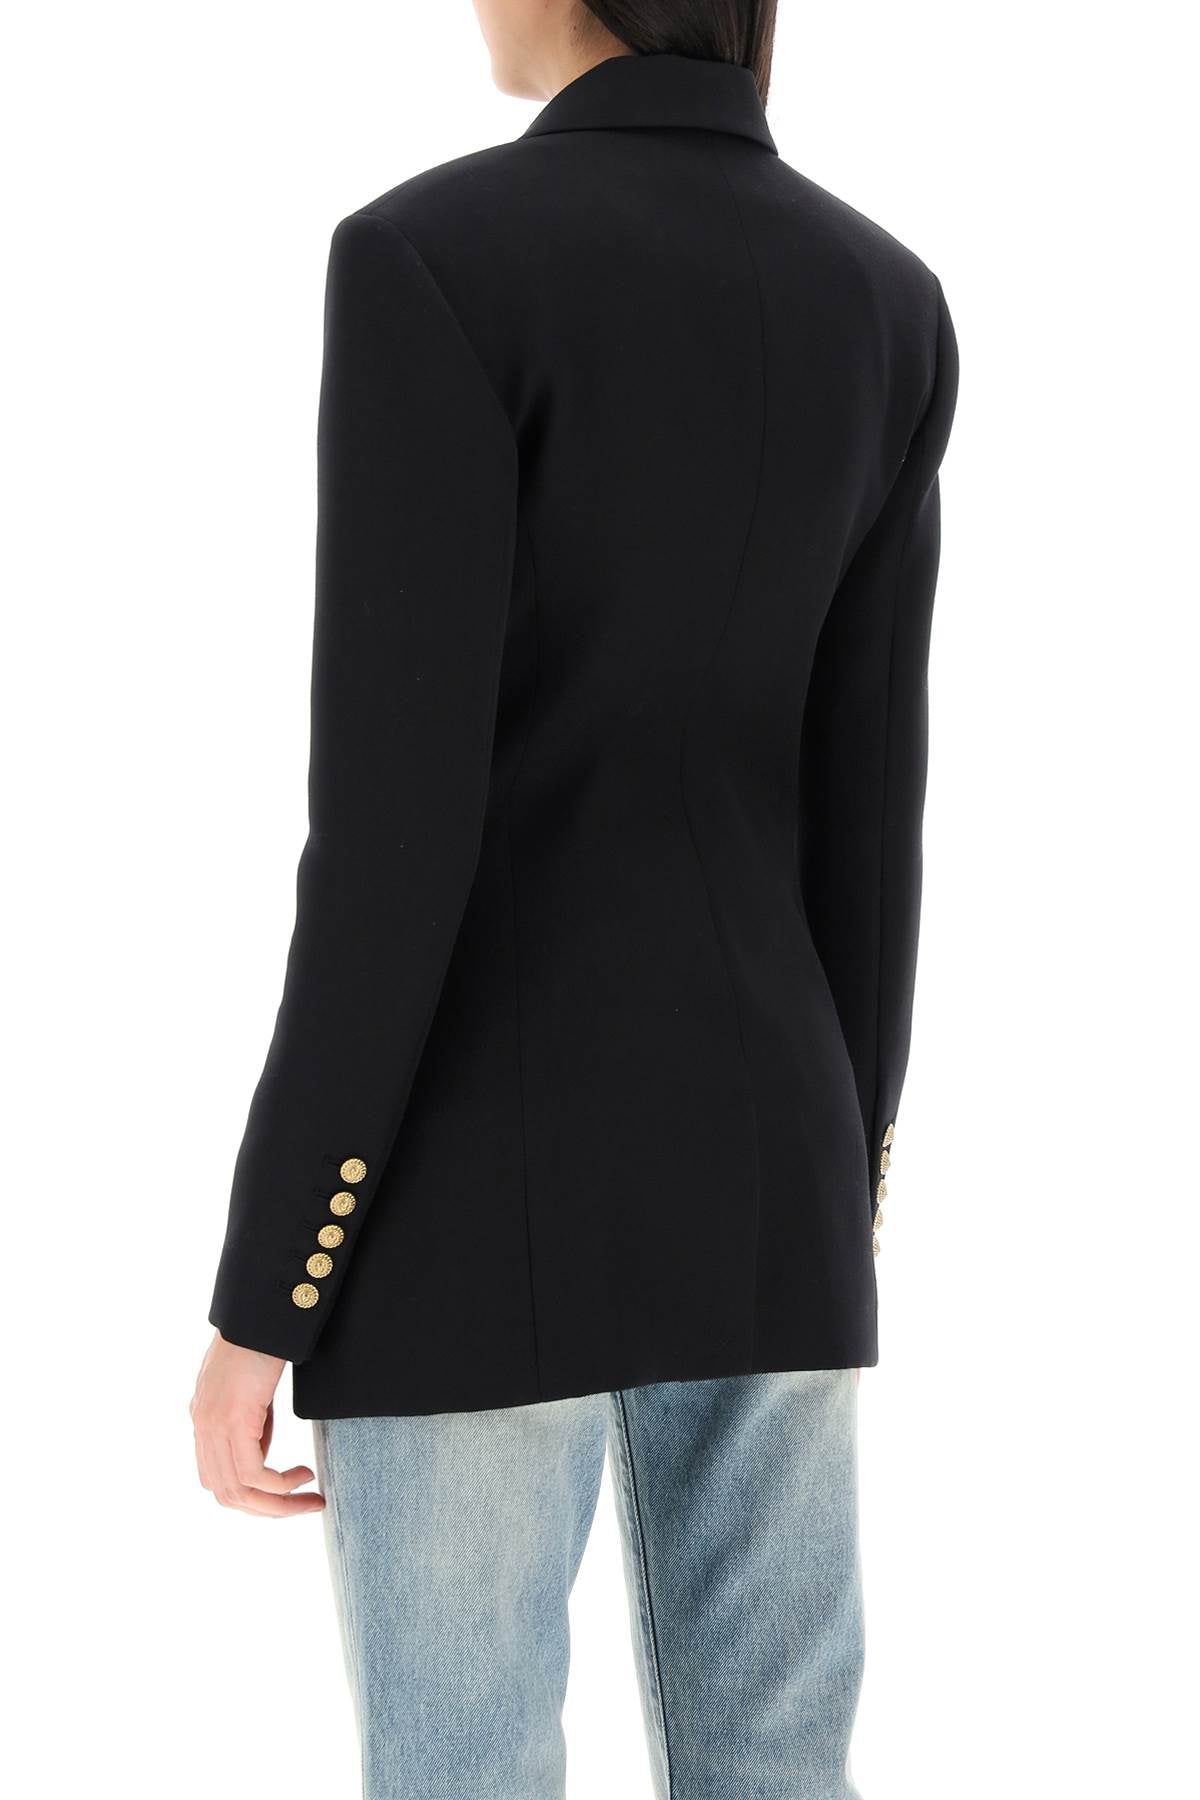 女士豪華黑色羊毛外套- 高品質單排扣外套配有精緻的金色獅頭扣子，修身剪裁和結構化肩膀